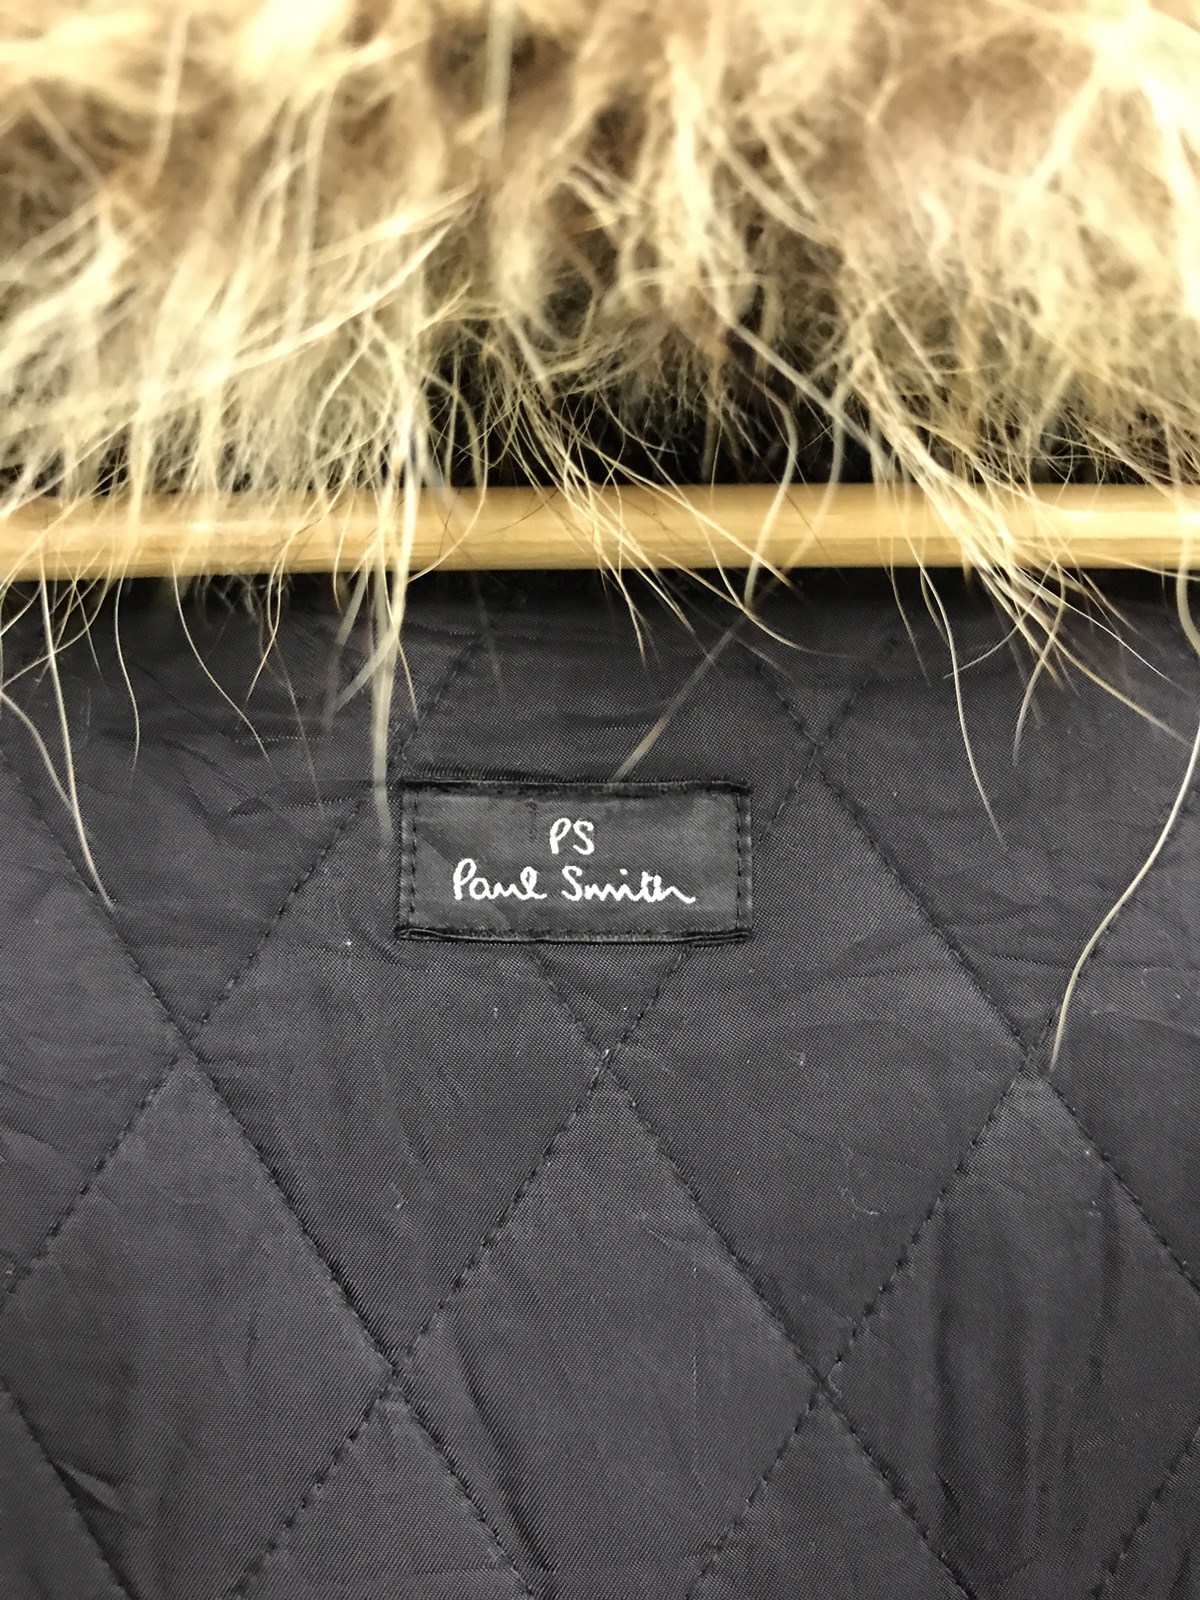 Paul smith faux fur parkas jacket - 10